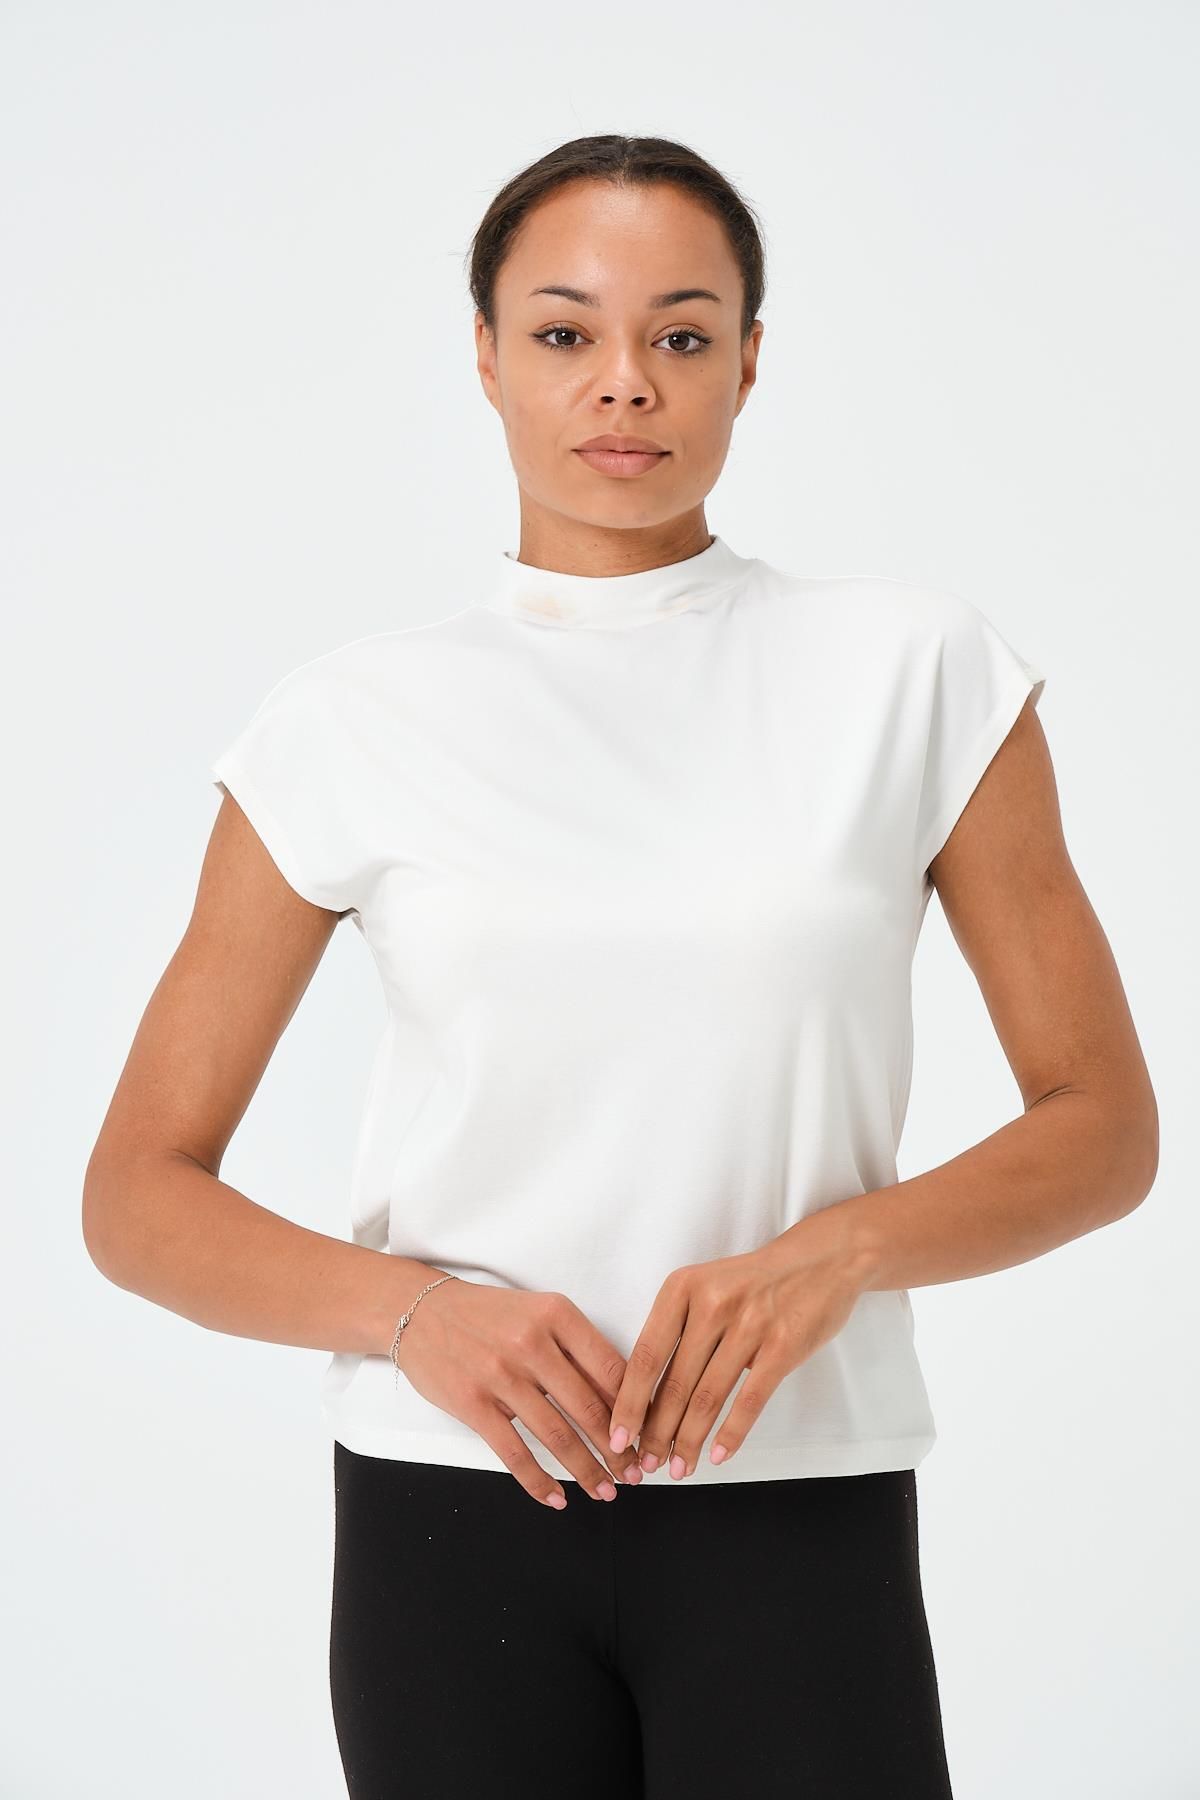 ES&SY P-004932 - Kadın Kısa Kollu Yüksek Yaka Örme T-shirt - Beyaz